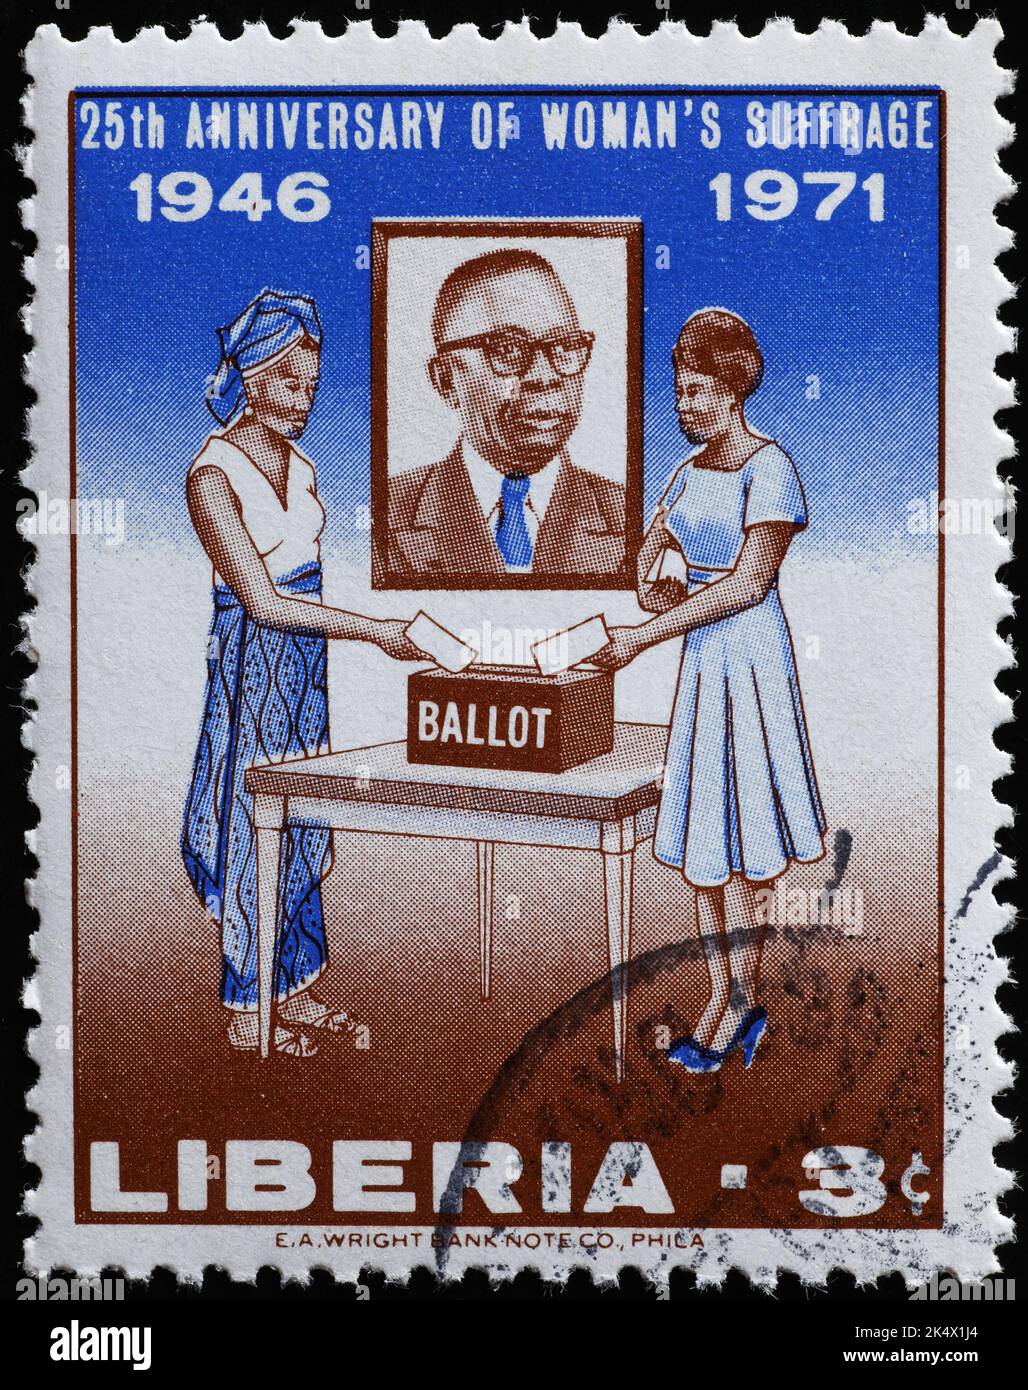 Das Frauenwahlrecht wurde auf der Marke Liberia gefeiert Stockfoto